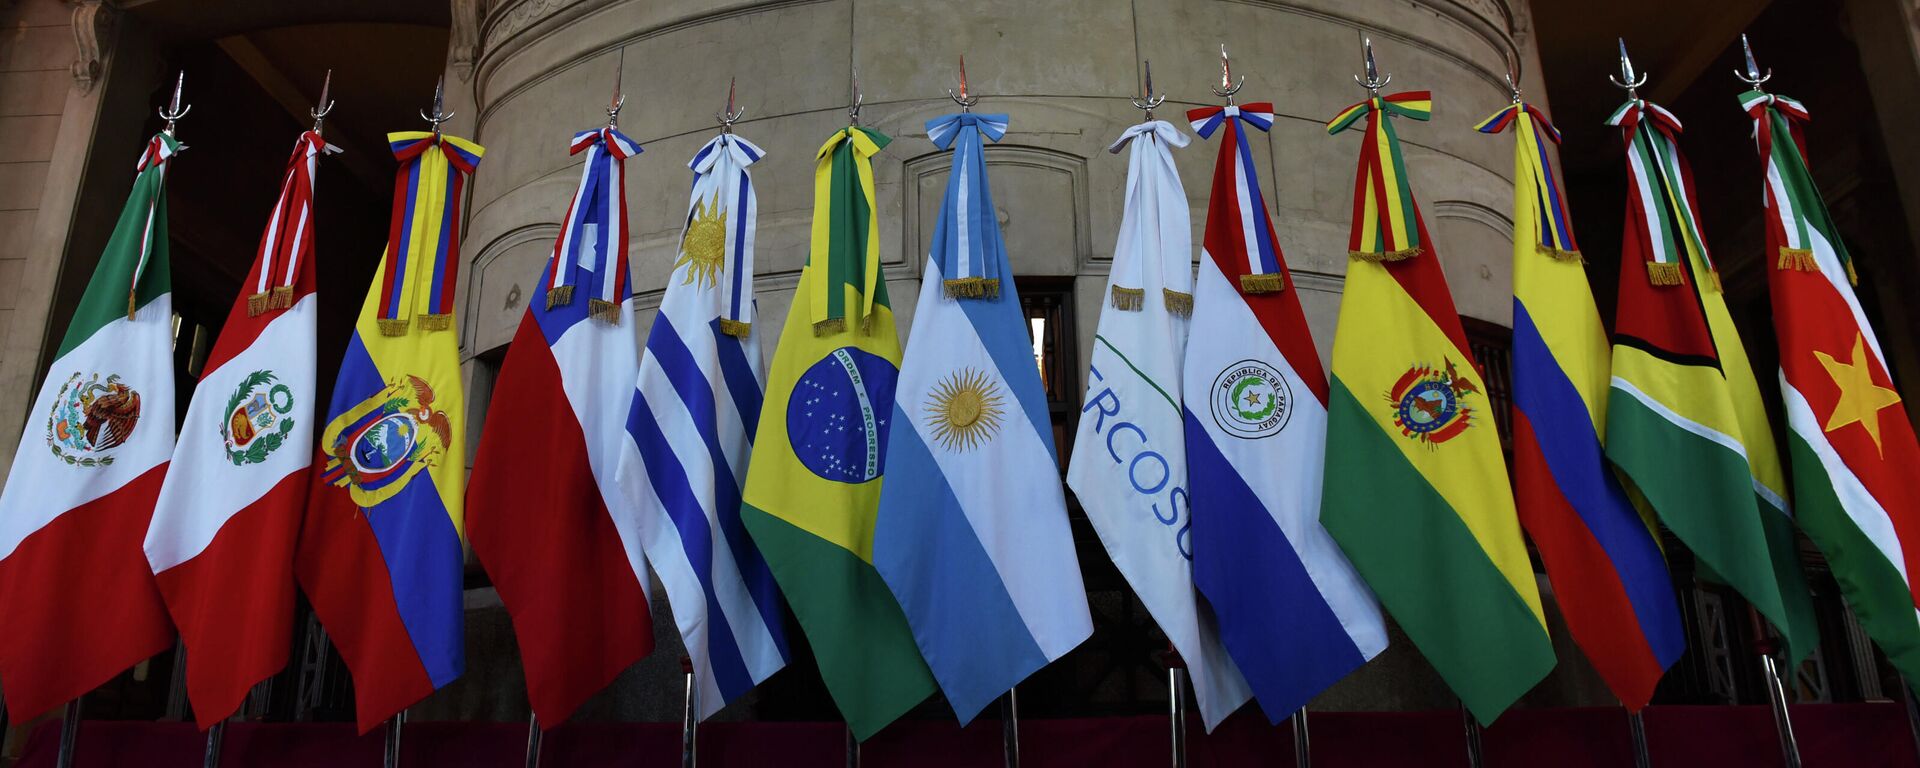 Banderas de miembros del Mercosur y Estados asociados - Sputnik Mundo, 1920, 12.10.2021